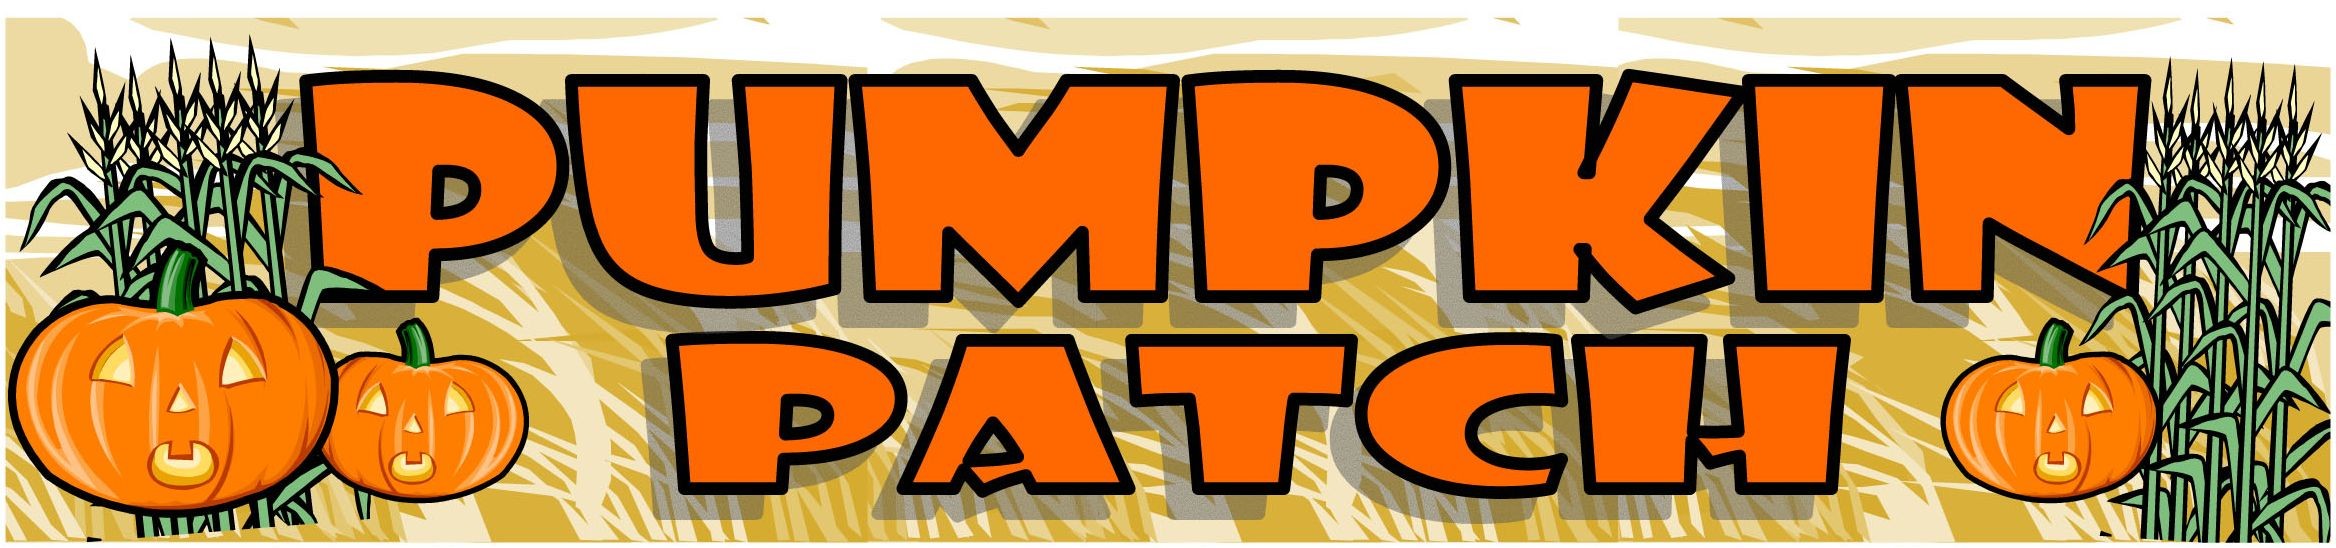 Pumpkin patch clipart tumundografico